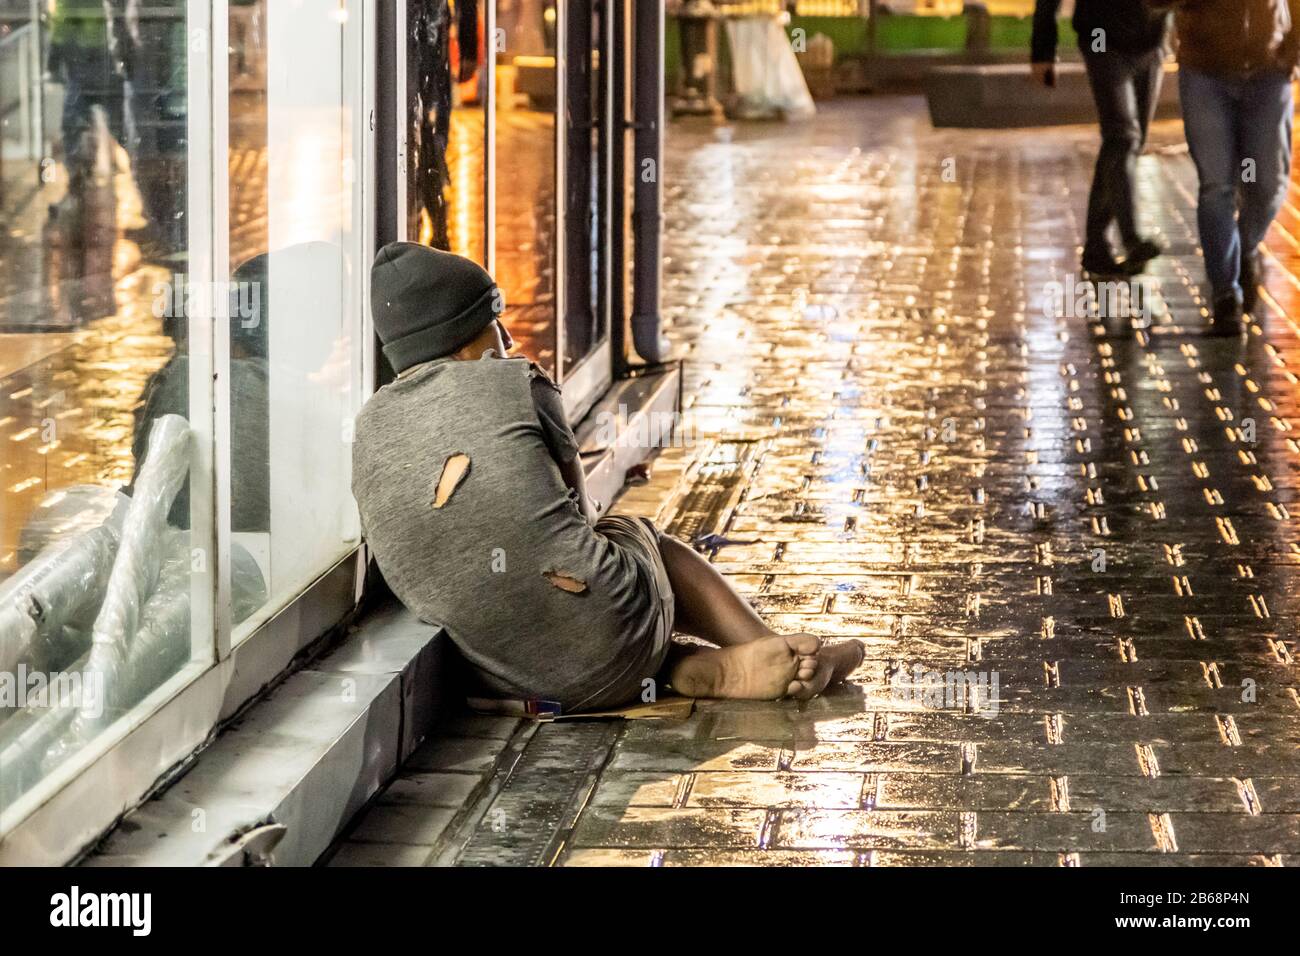 Eminonu, Istanbul / Turchia - 05 marzo 2020: Ragazzo senza tetto che mendia per strada Foto Stock